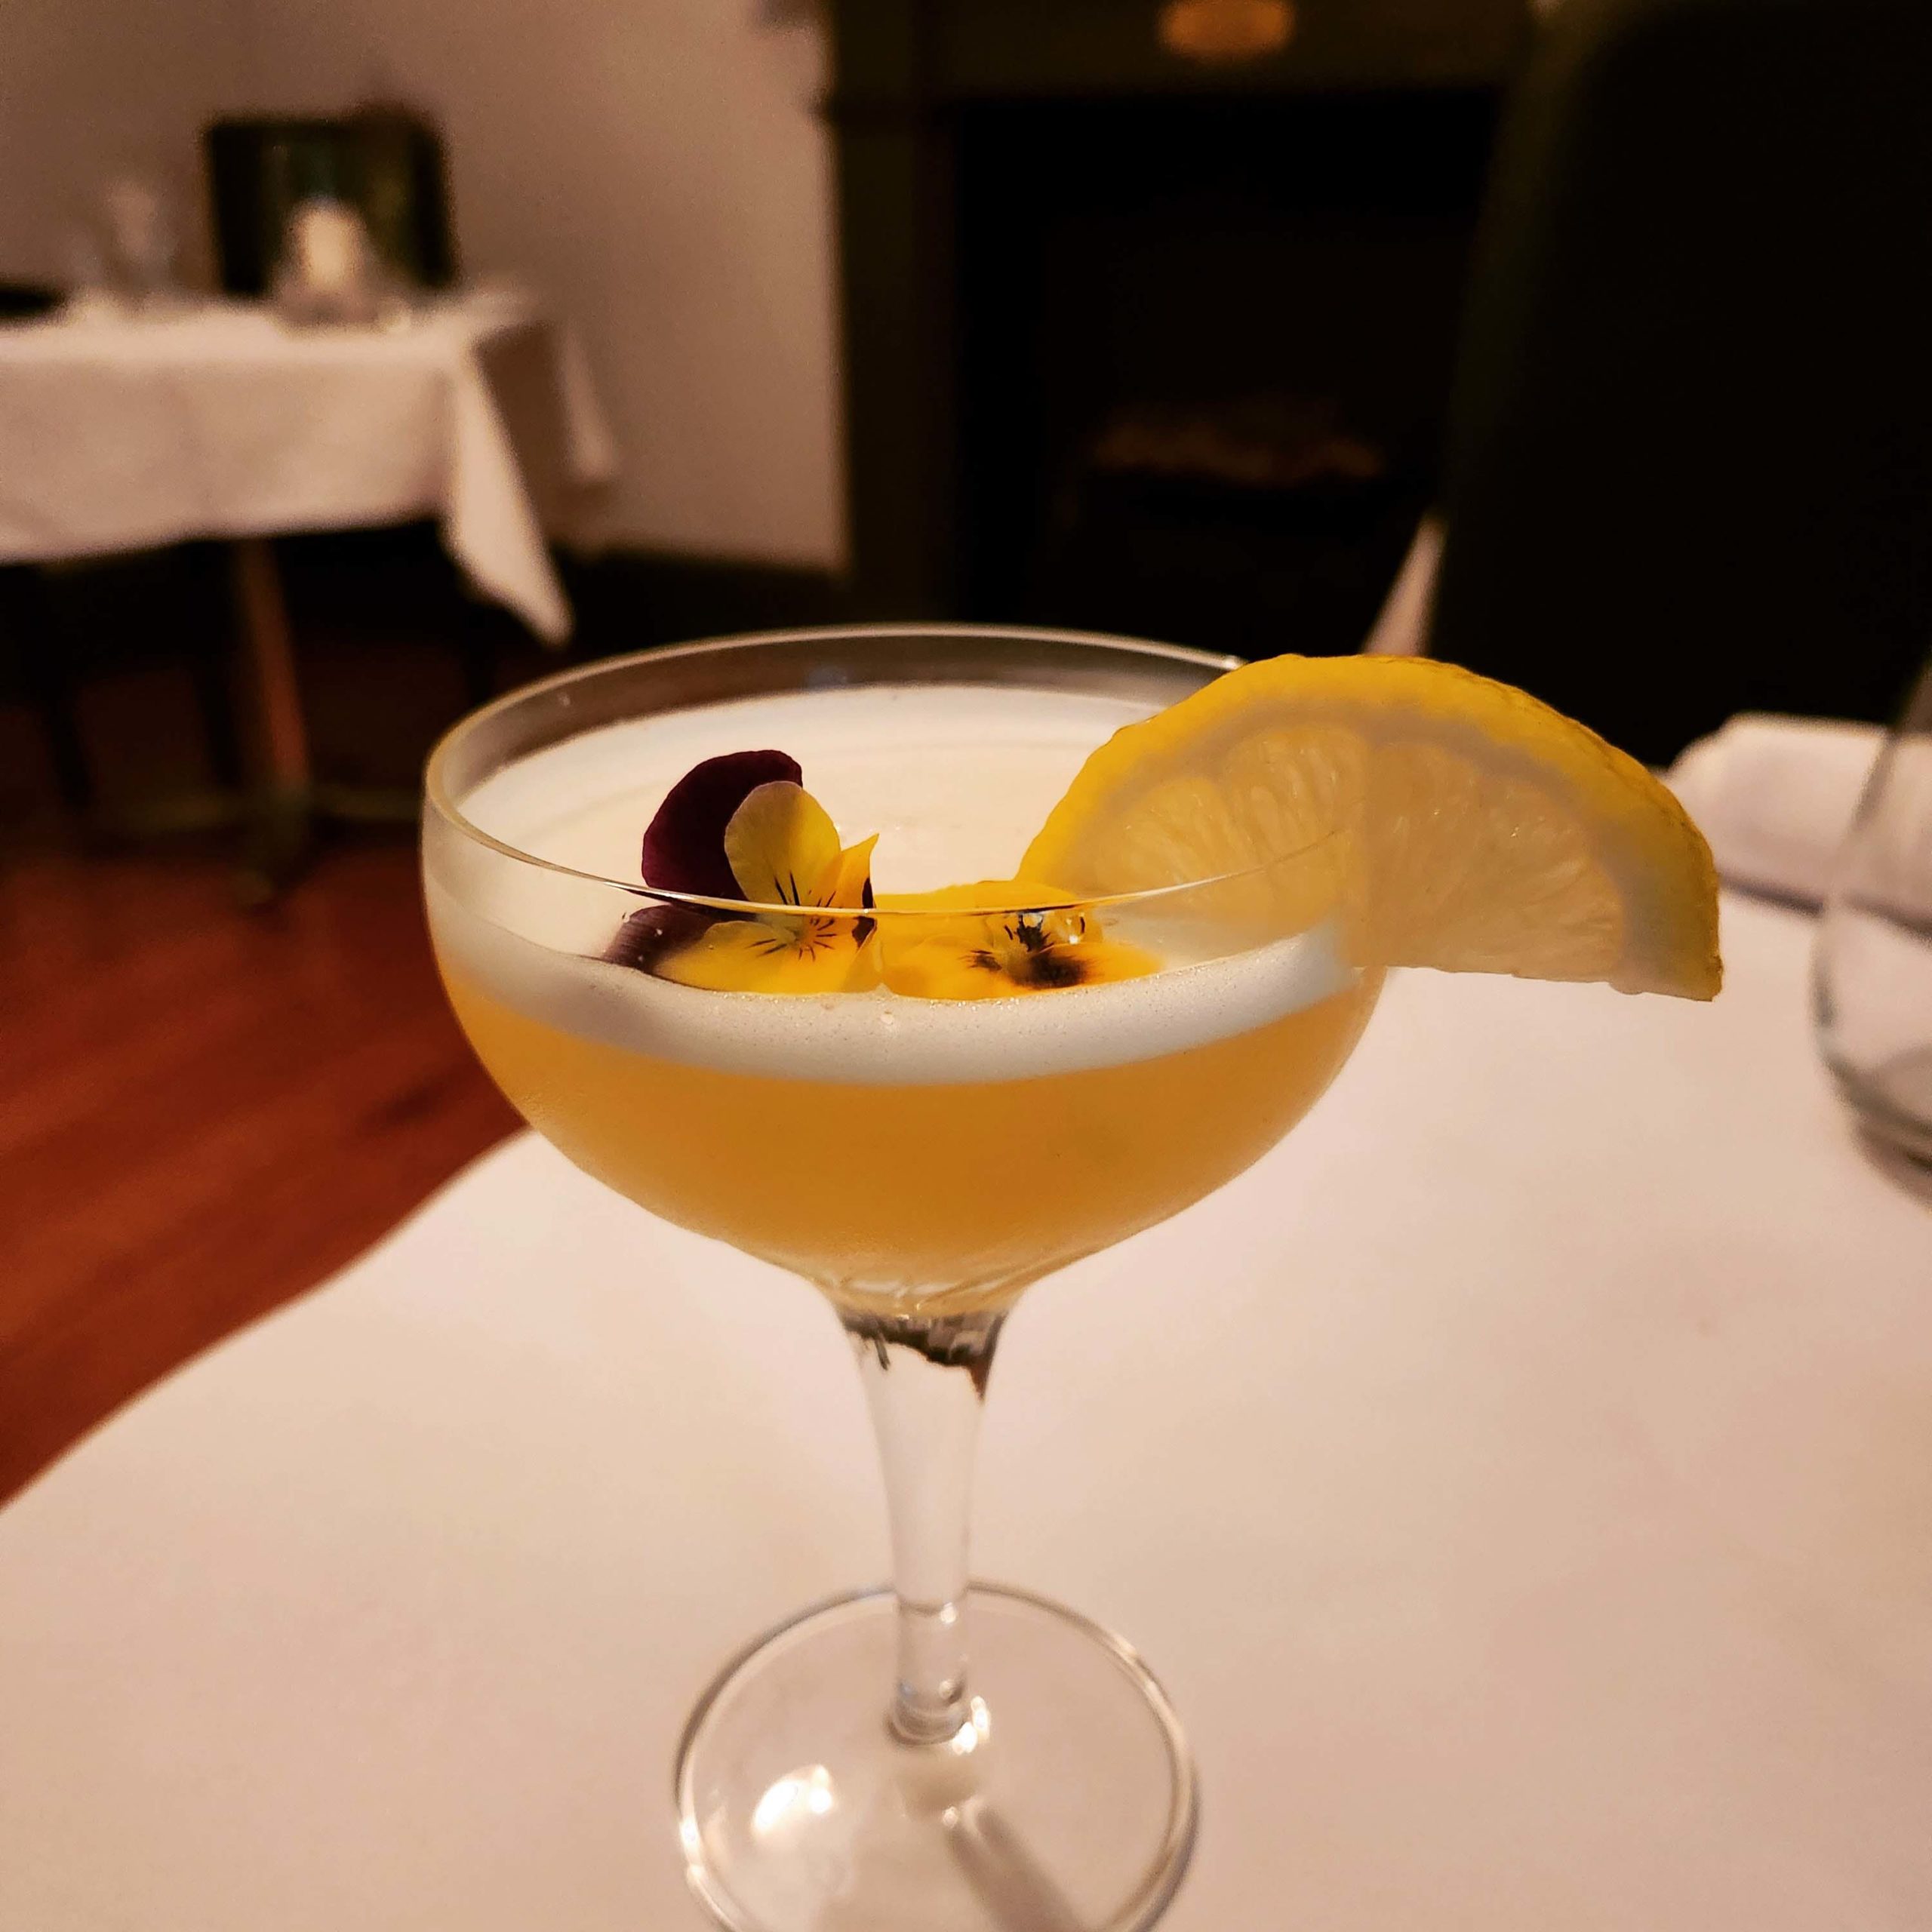 The Cottage lemon meringue pie cocktail